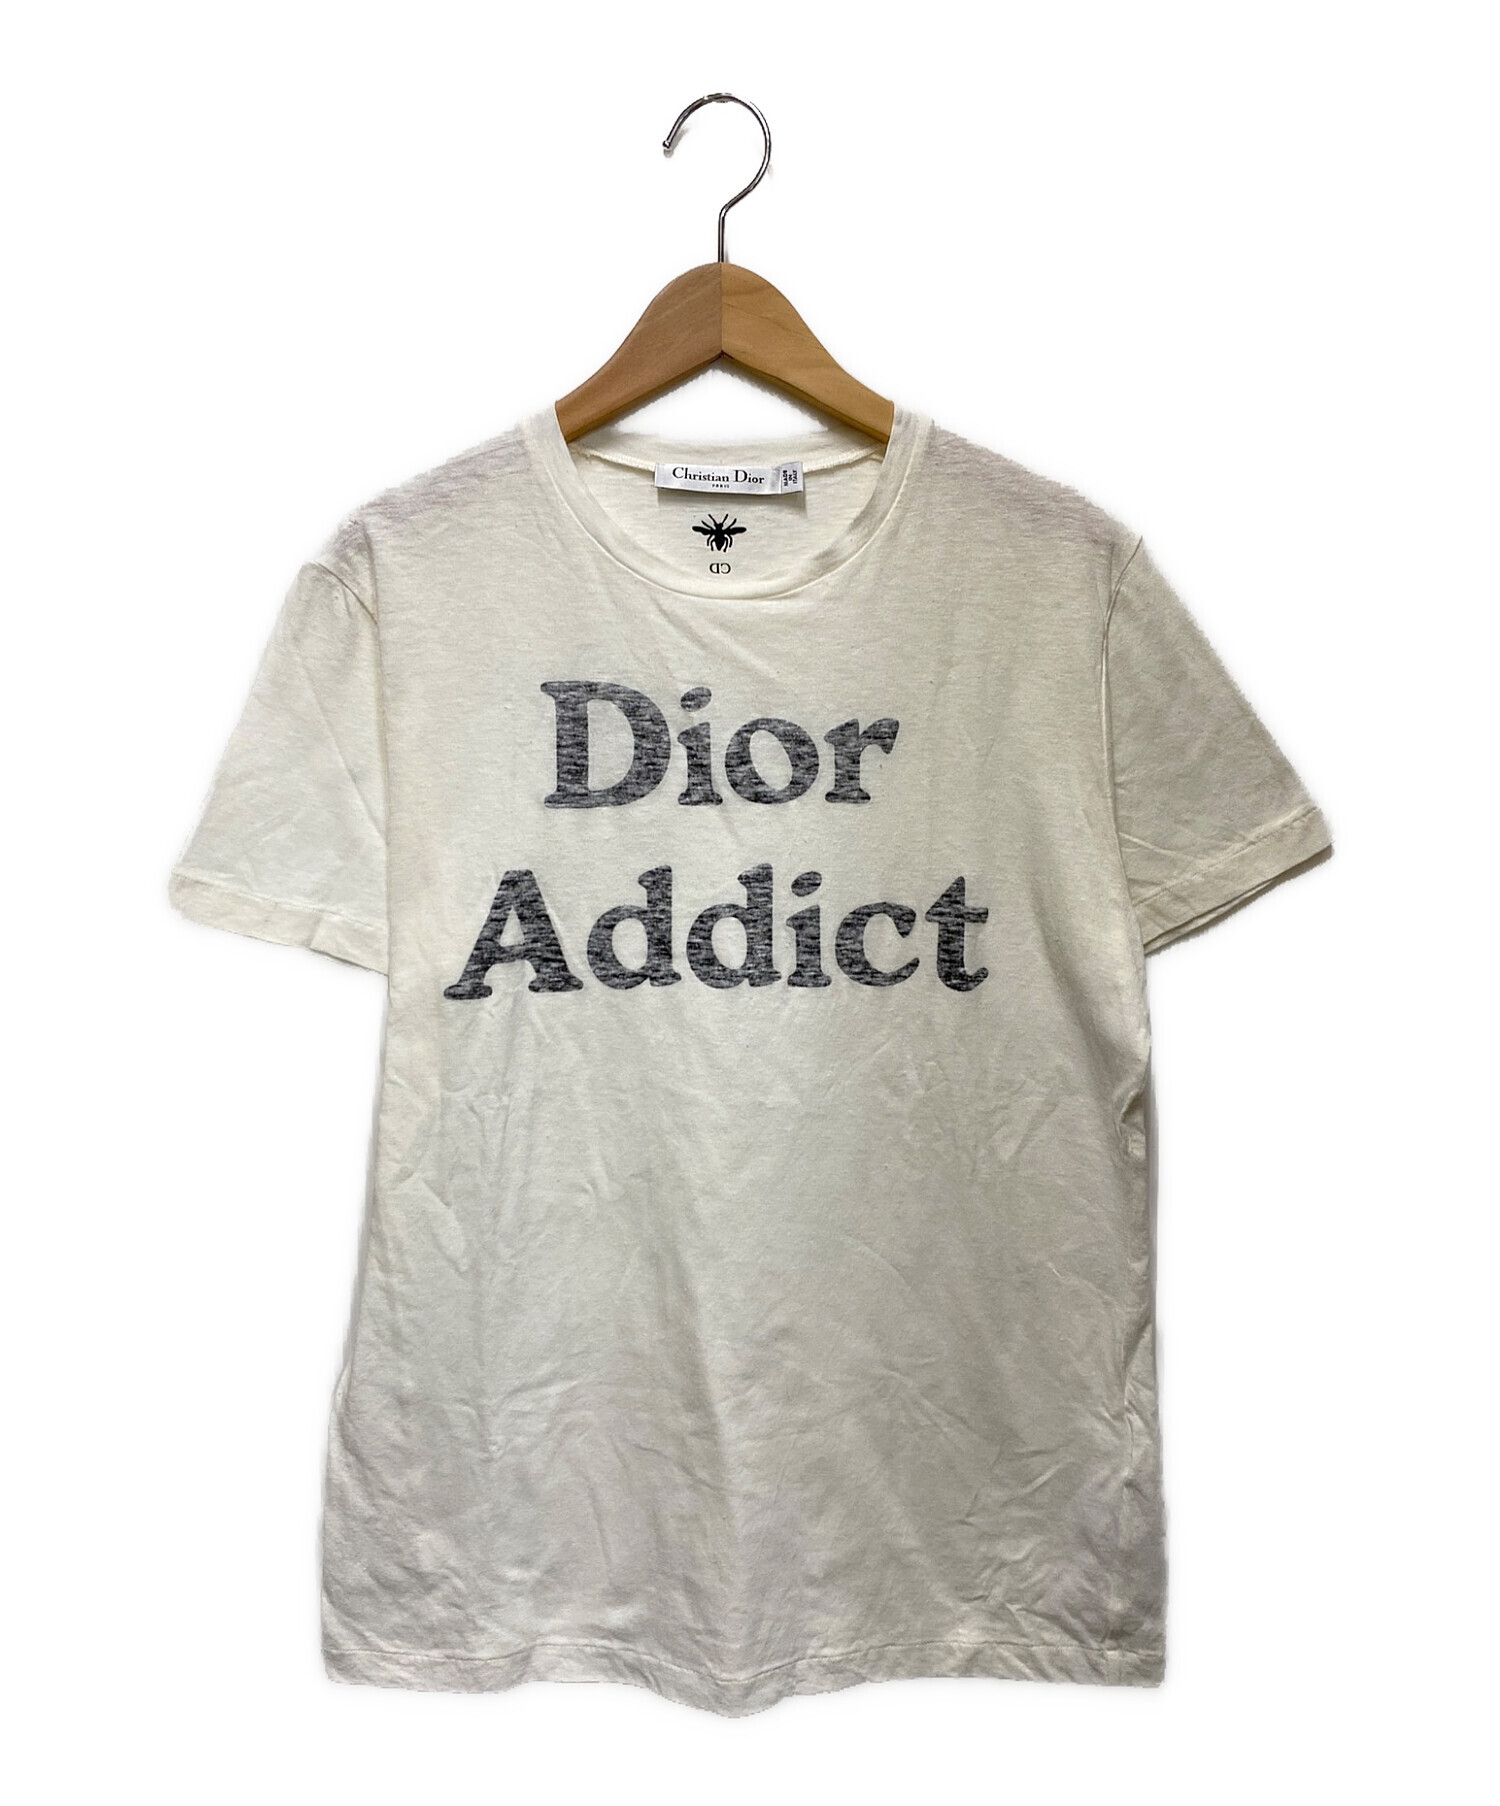 Christian Dior (クリスチャン ディオール) Dior Addict T shirt アイボリー サイズ:S